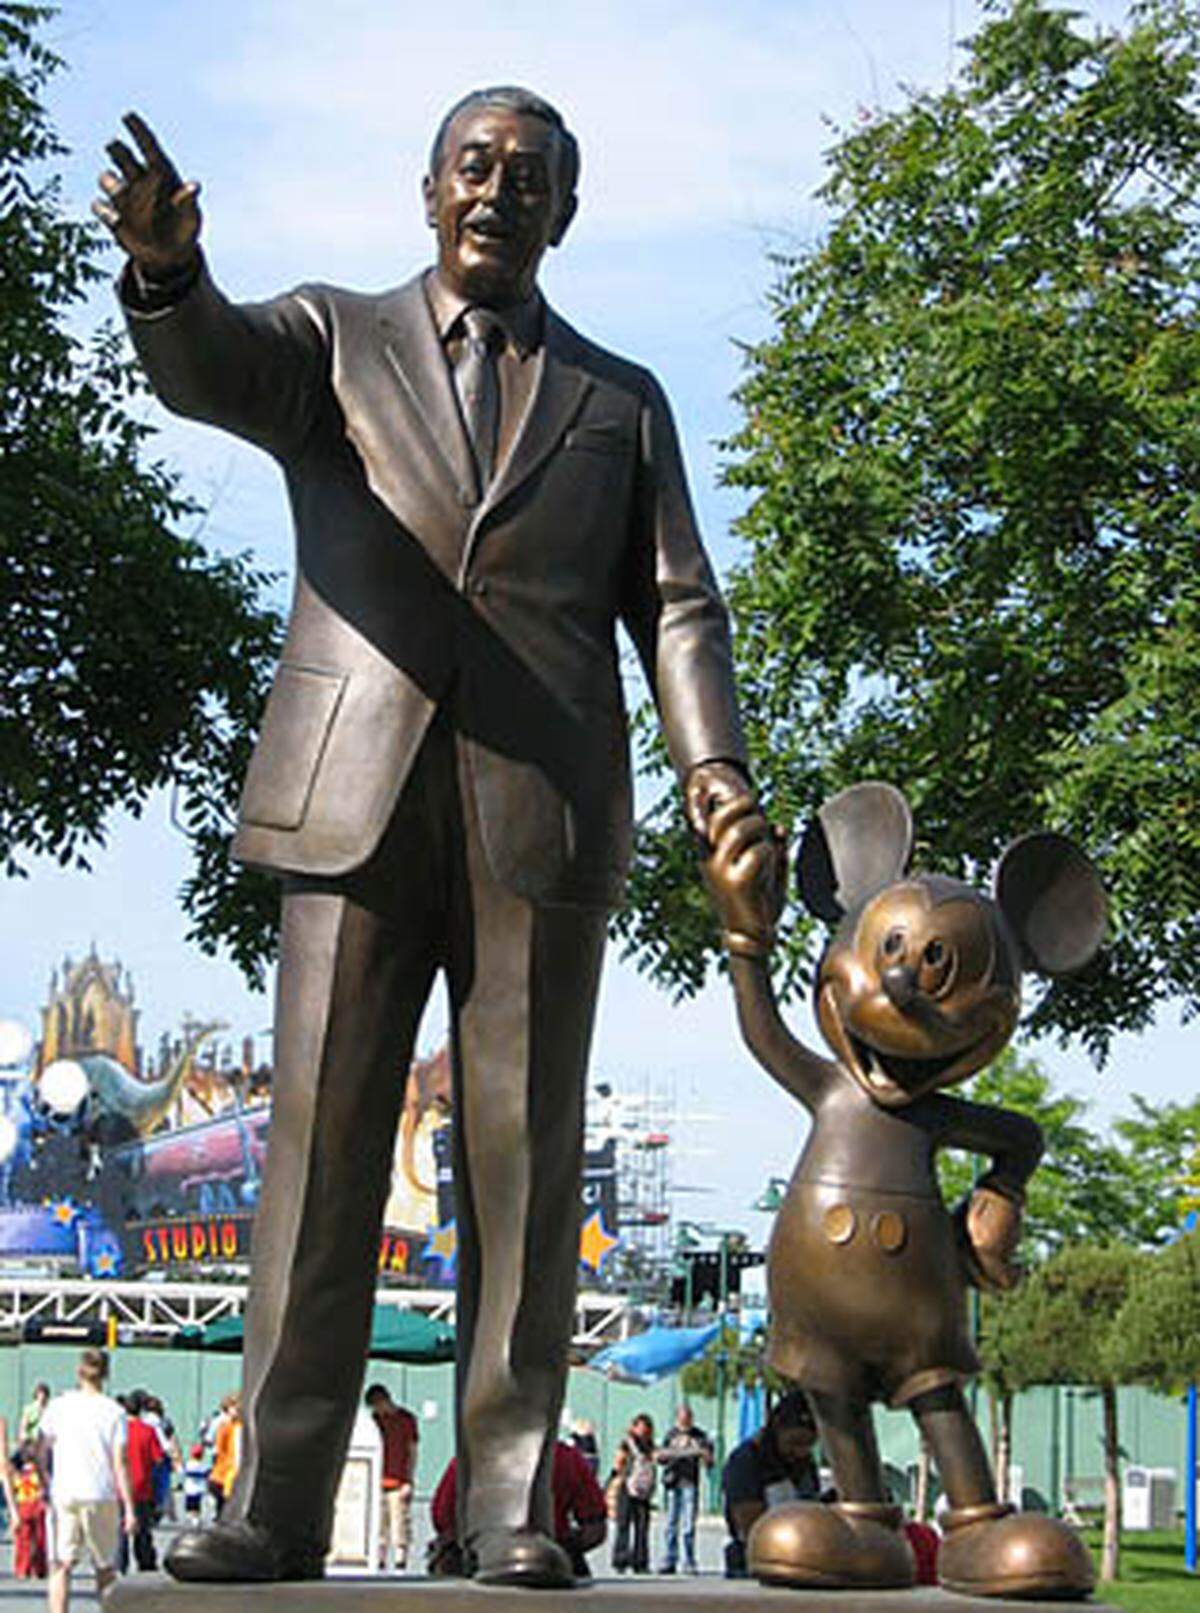 Bald beginnt die Figur auch zu sprechen - Walt Disney leiht ihr für fast zwei Jahrzehnte seine Stimme. 1935 läuft der Film erstmals in Farbe. Schon drei Jahre zuvor war Disney für die Erschaffung der Supermaus mit einem Ehren-Oscar ausgezeichnet worden. "Wenn die Leute über Micky Maus lachen, dann deshalb, weil er so menschlich ist. Das ist das Geheimnis seines Erfolgs", sagte der 1966 gestorbene Erfinder einmal.